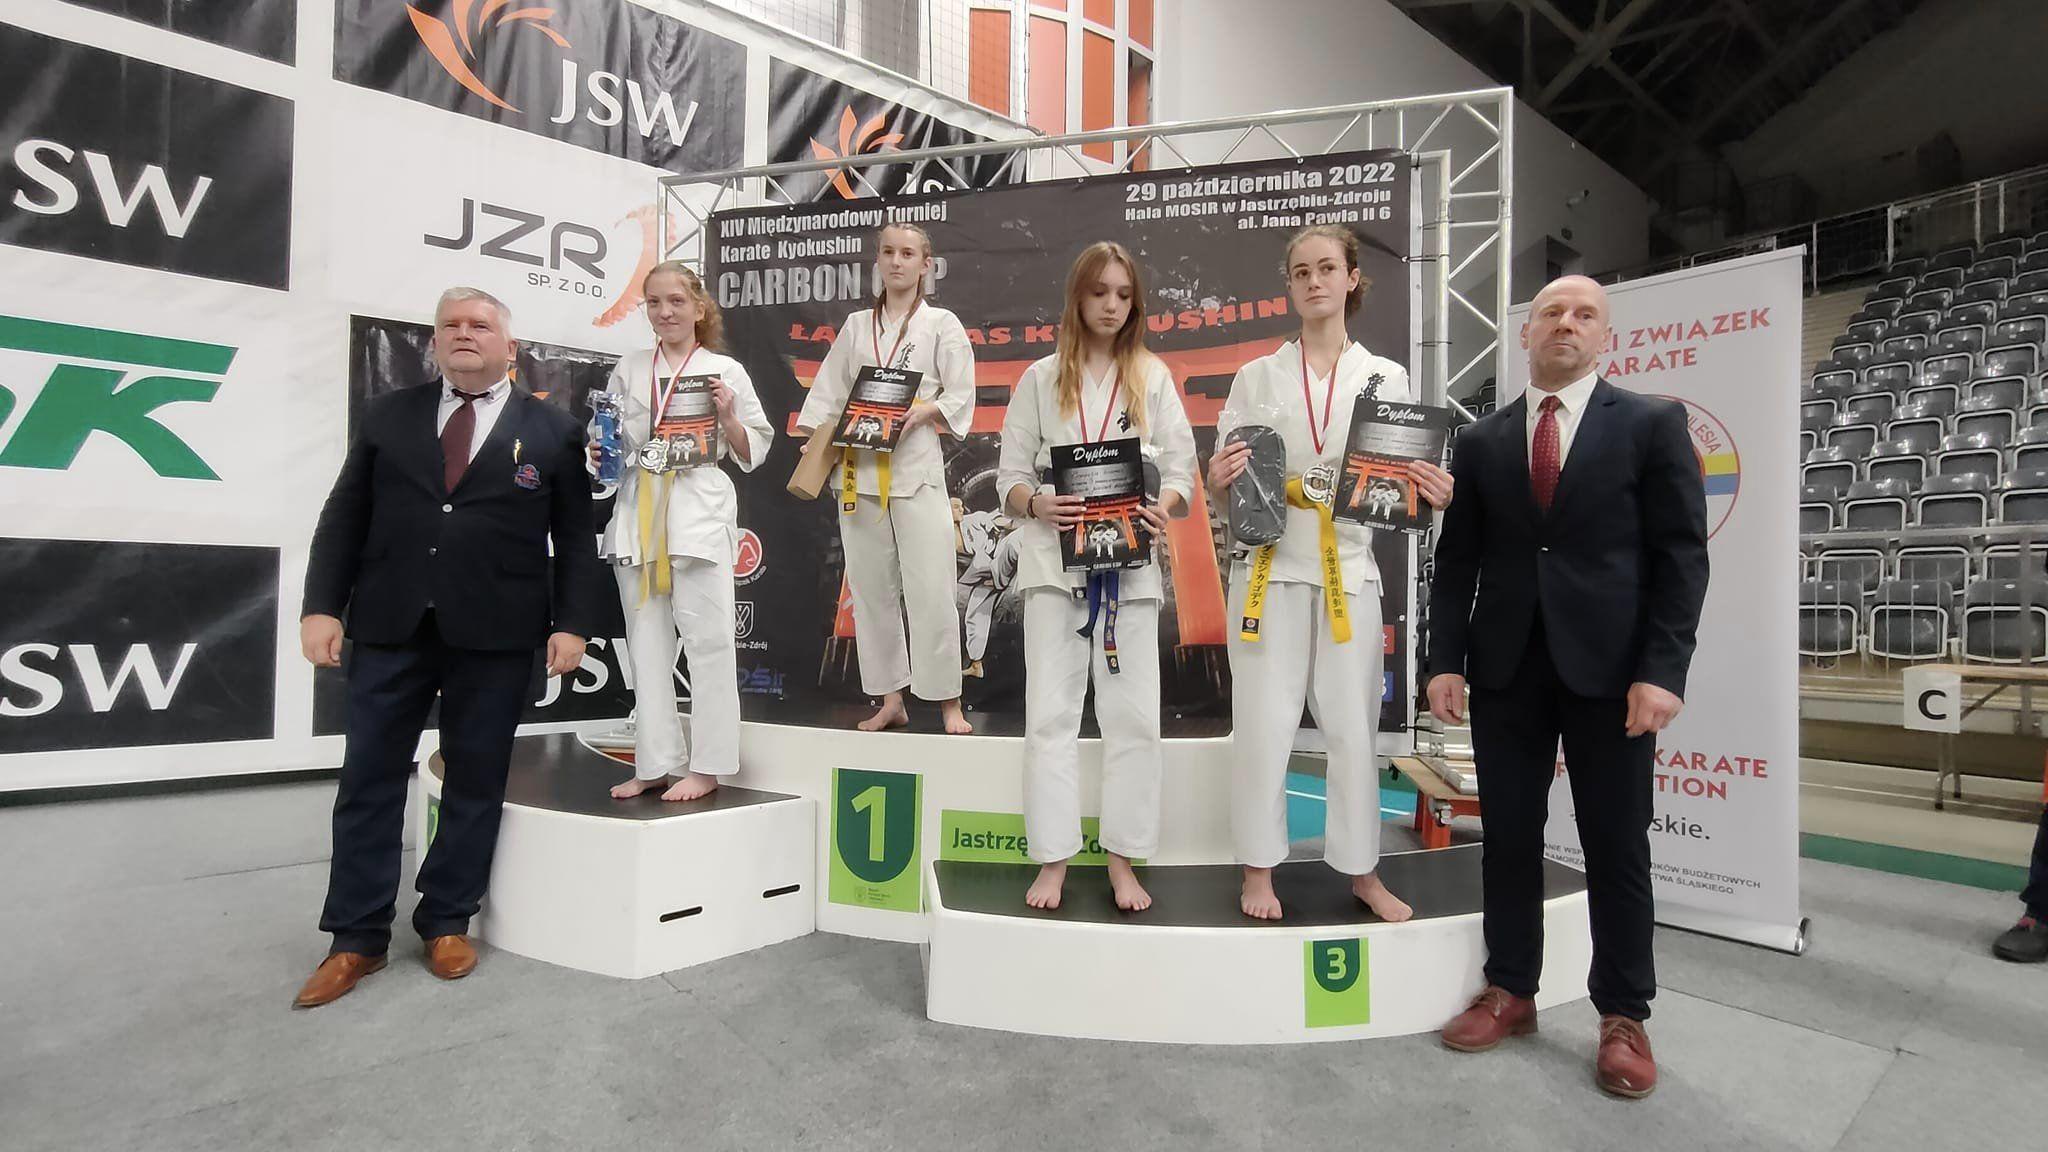 Zdj. nr. 1. Międzynarodowy Turniej Karate Kyokushin CARBON CUP w Jastrzębiu Zdroju - 29 października 2022 r.